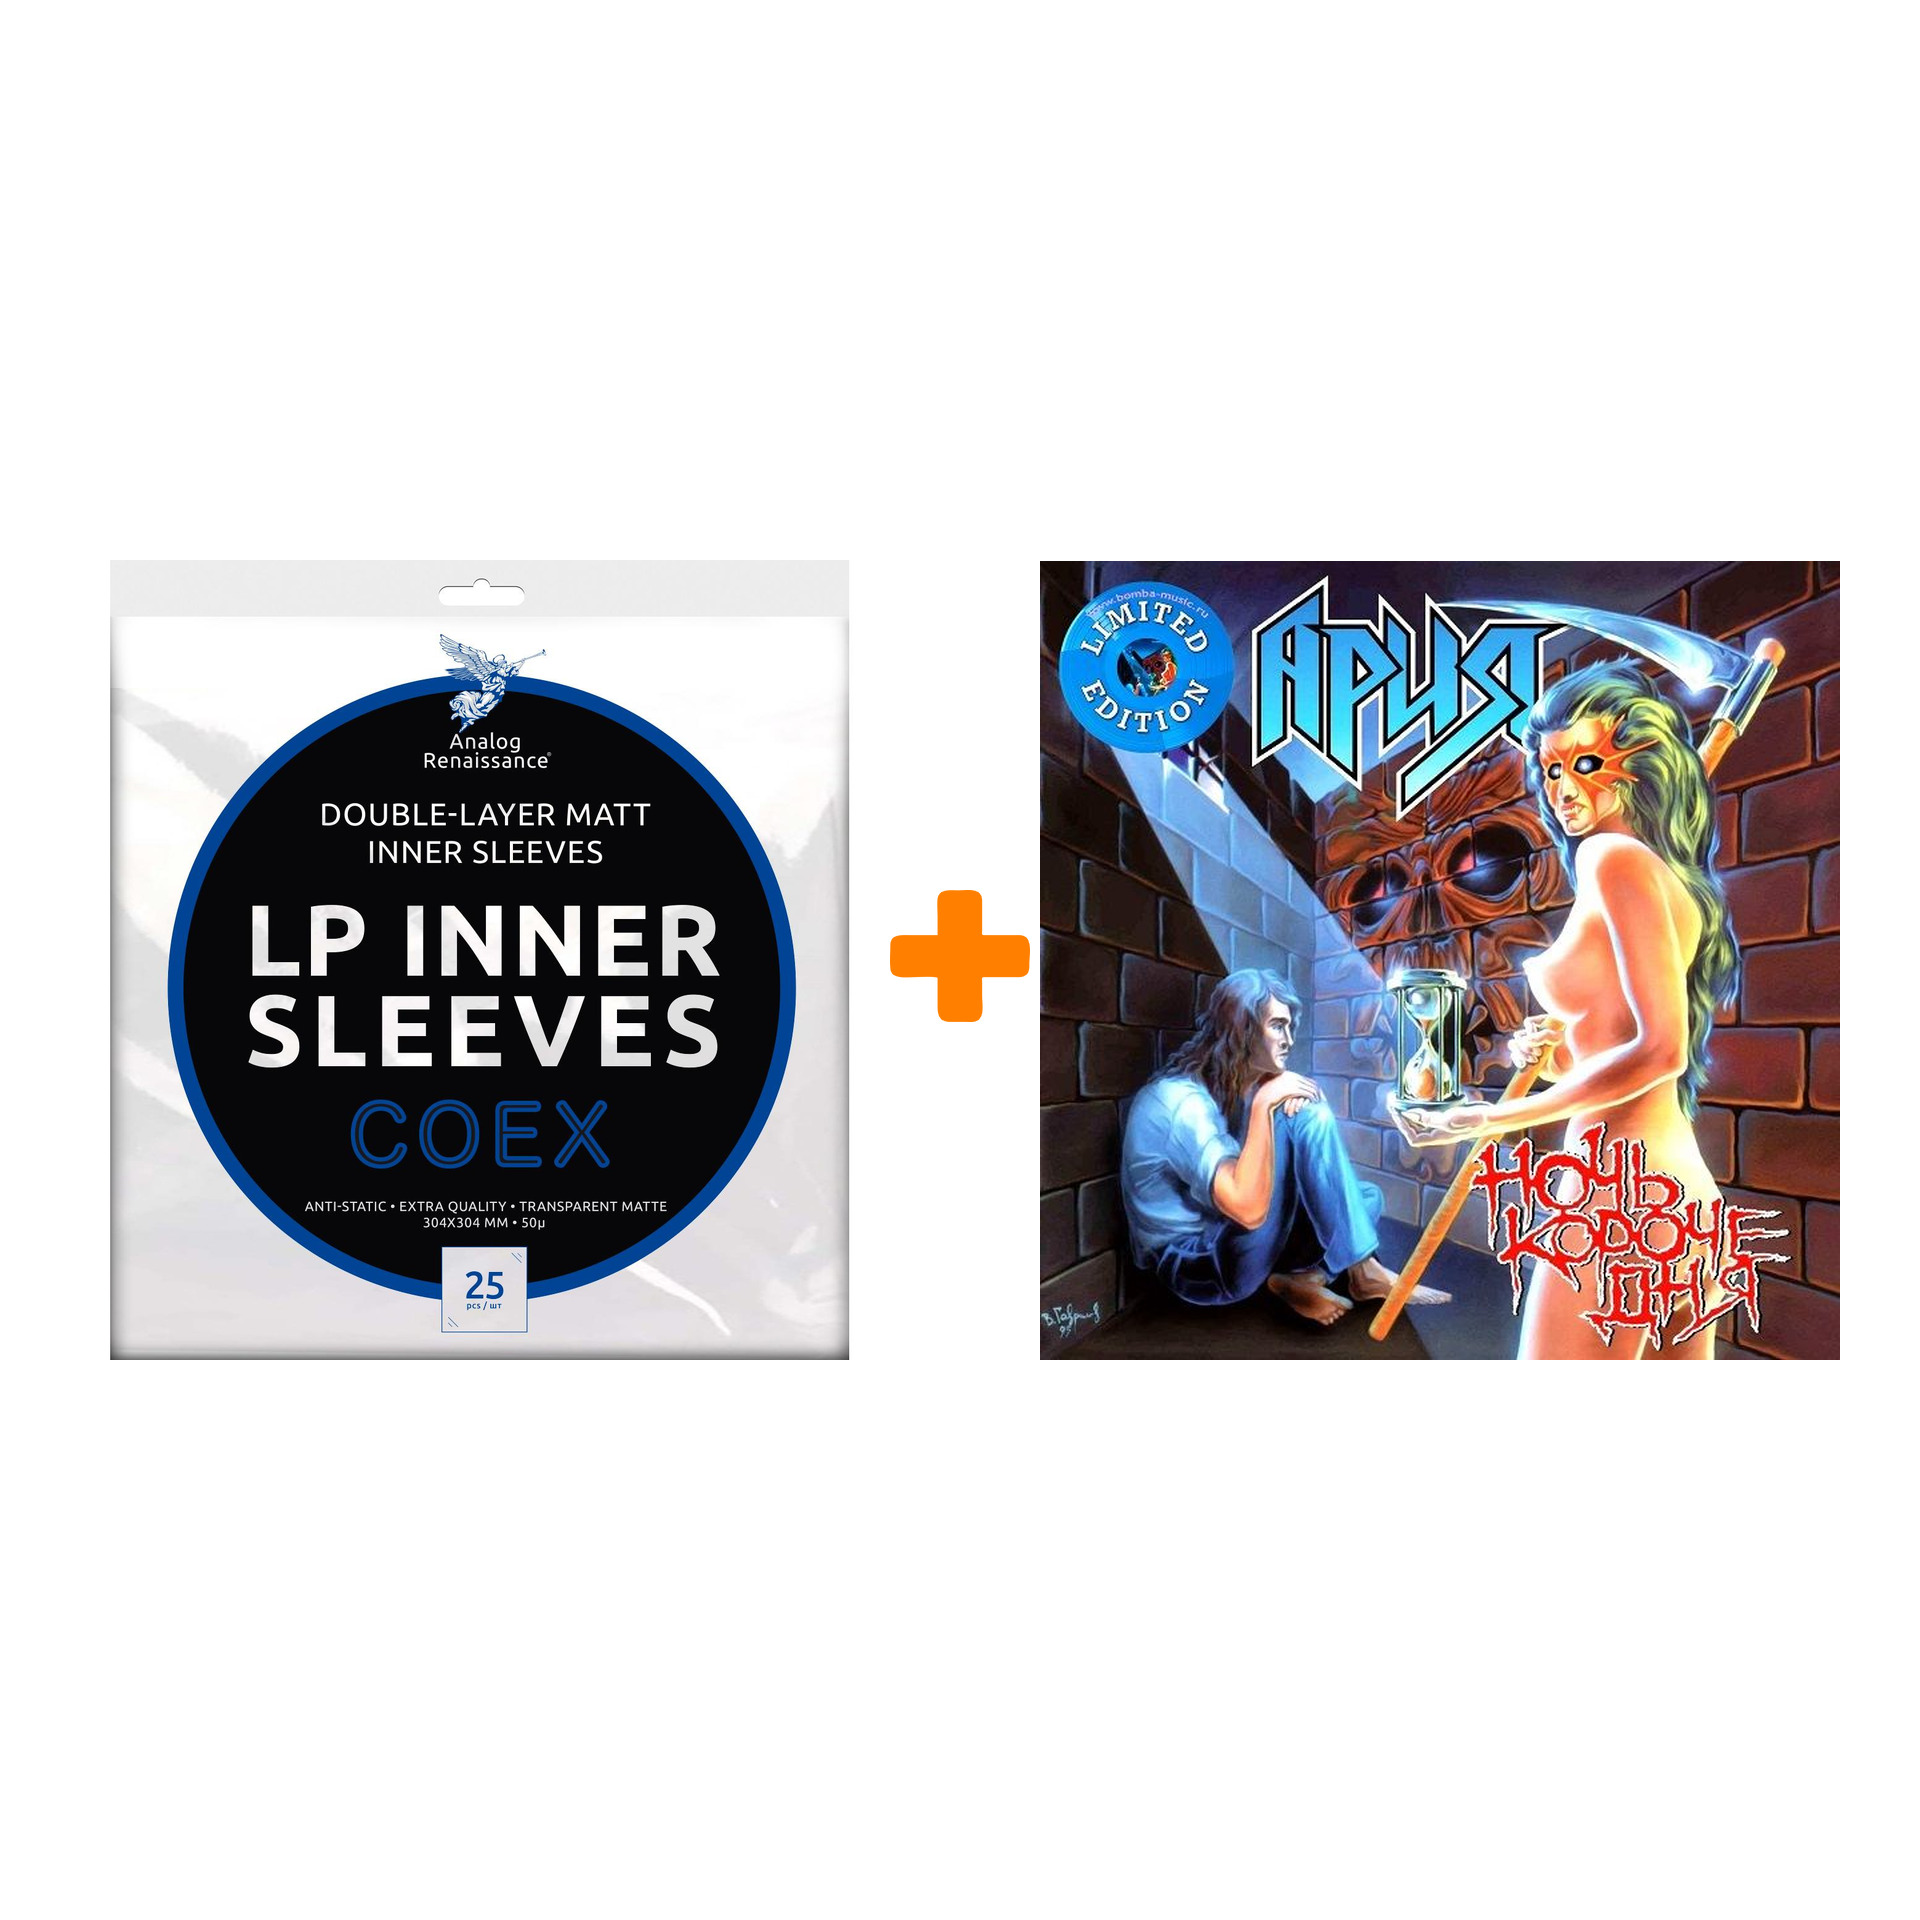 АРИЯ Ночь короче дня Coloured Crystal Blue Vinyl LP + Конверты внутренние COEX для грампластинок 12 25шт Набор